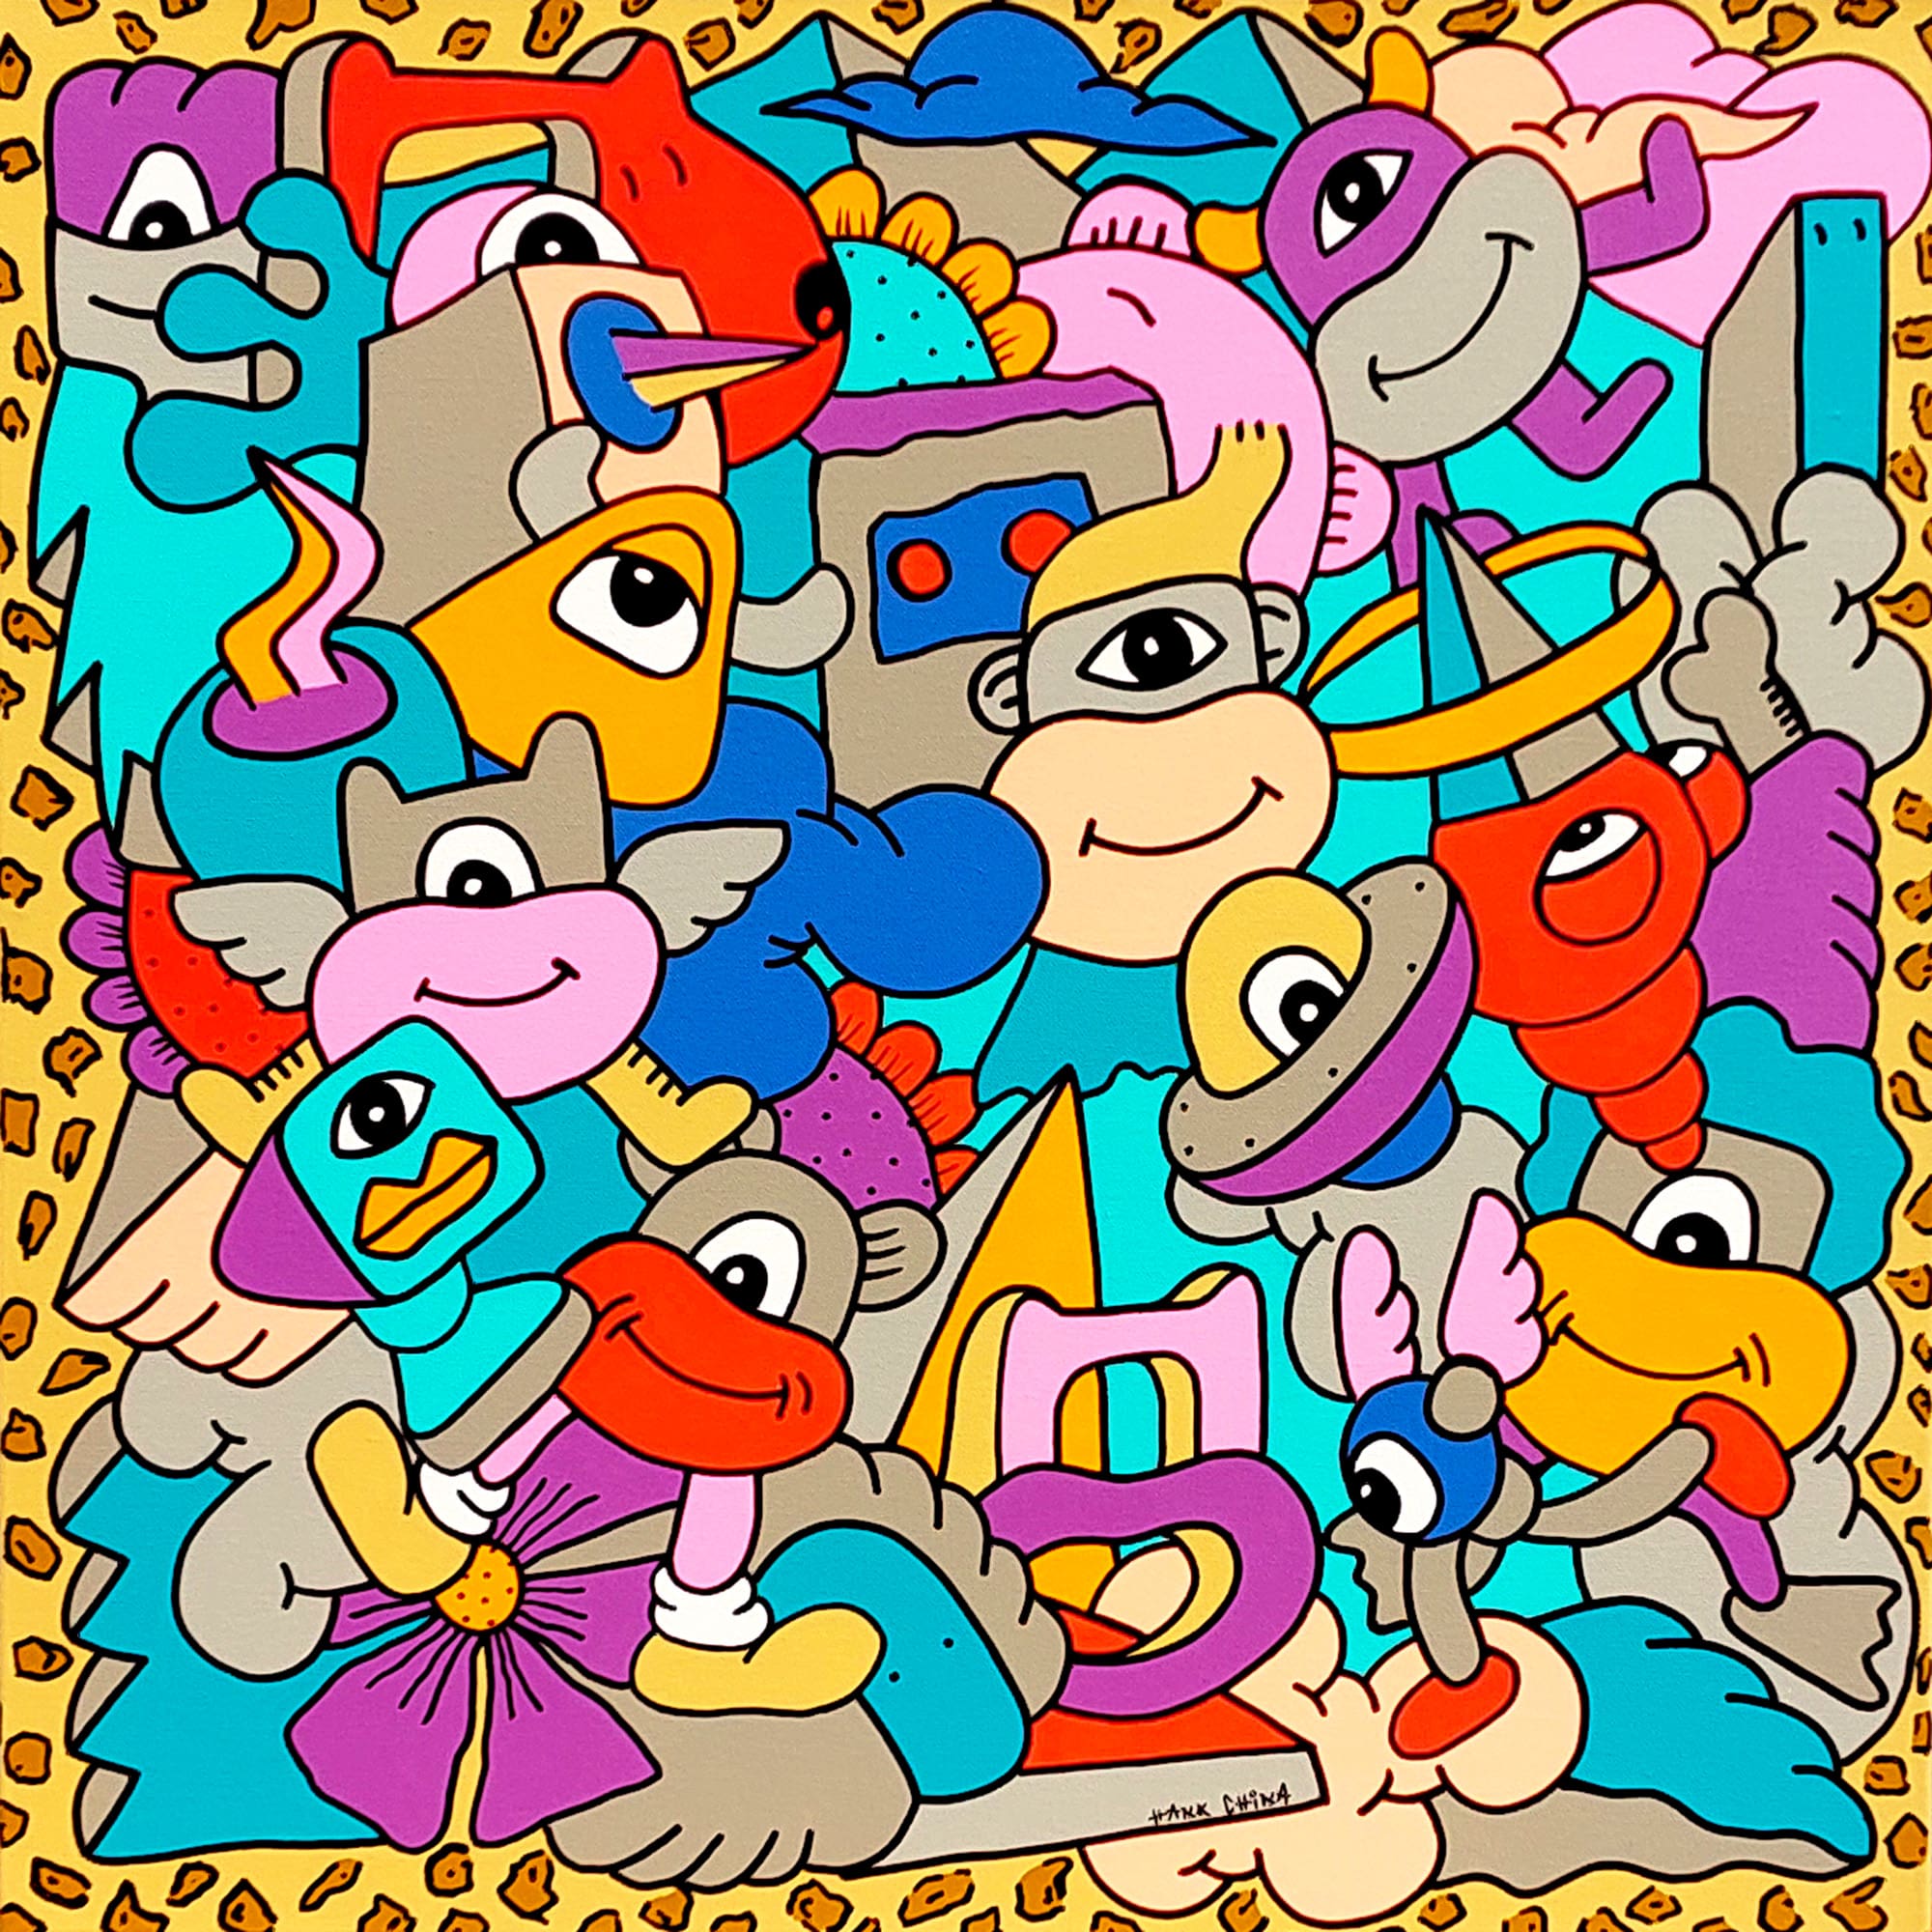 Peinture à l'acylique sur toile par l'artiste Hank CHINA représentant des personnages fantastiques dans un univers coloré